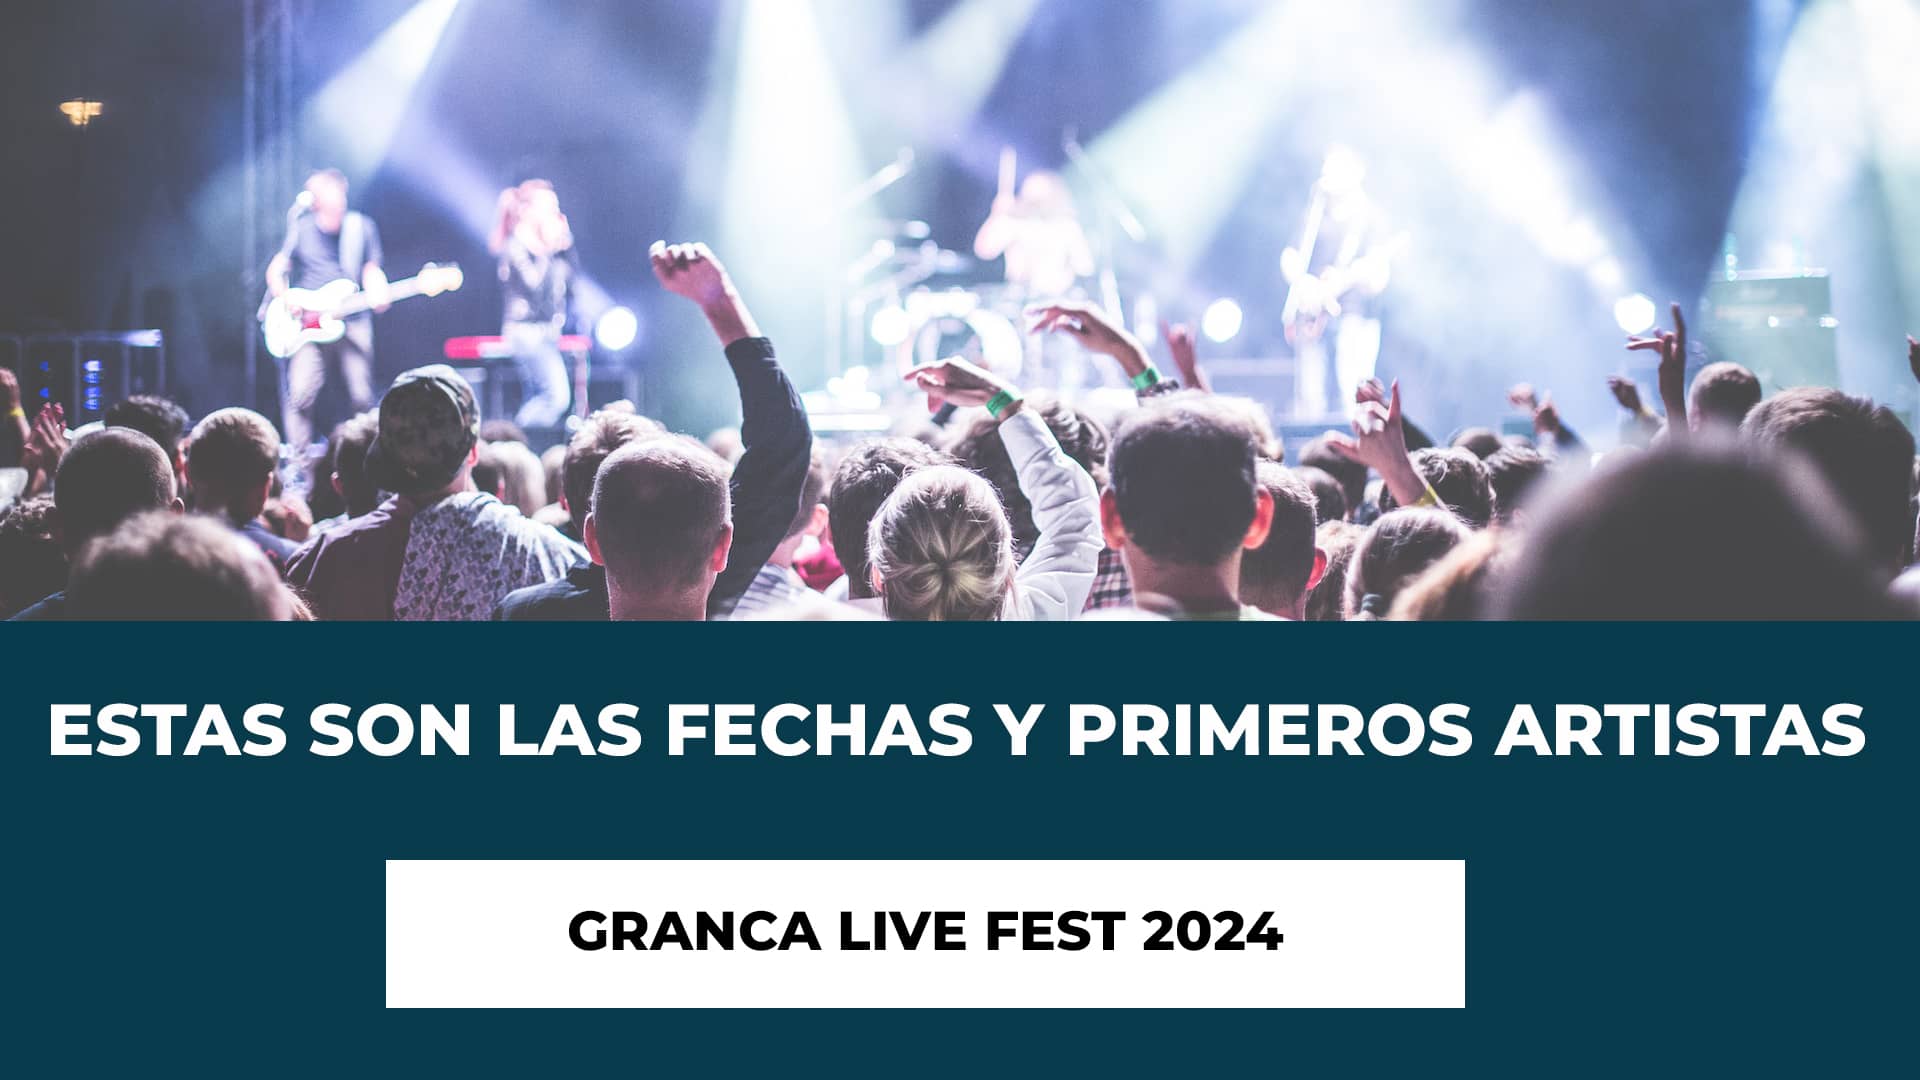 Estas son las Fechas y Primeros Artistas Granca Live Fest 2024 - Fechas y Recinto - Primeros Artistas Confirmados - Tipos de Abonos